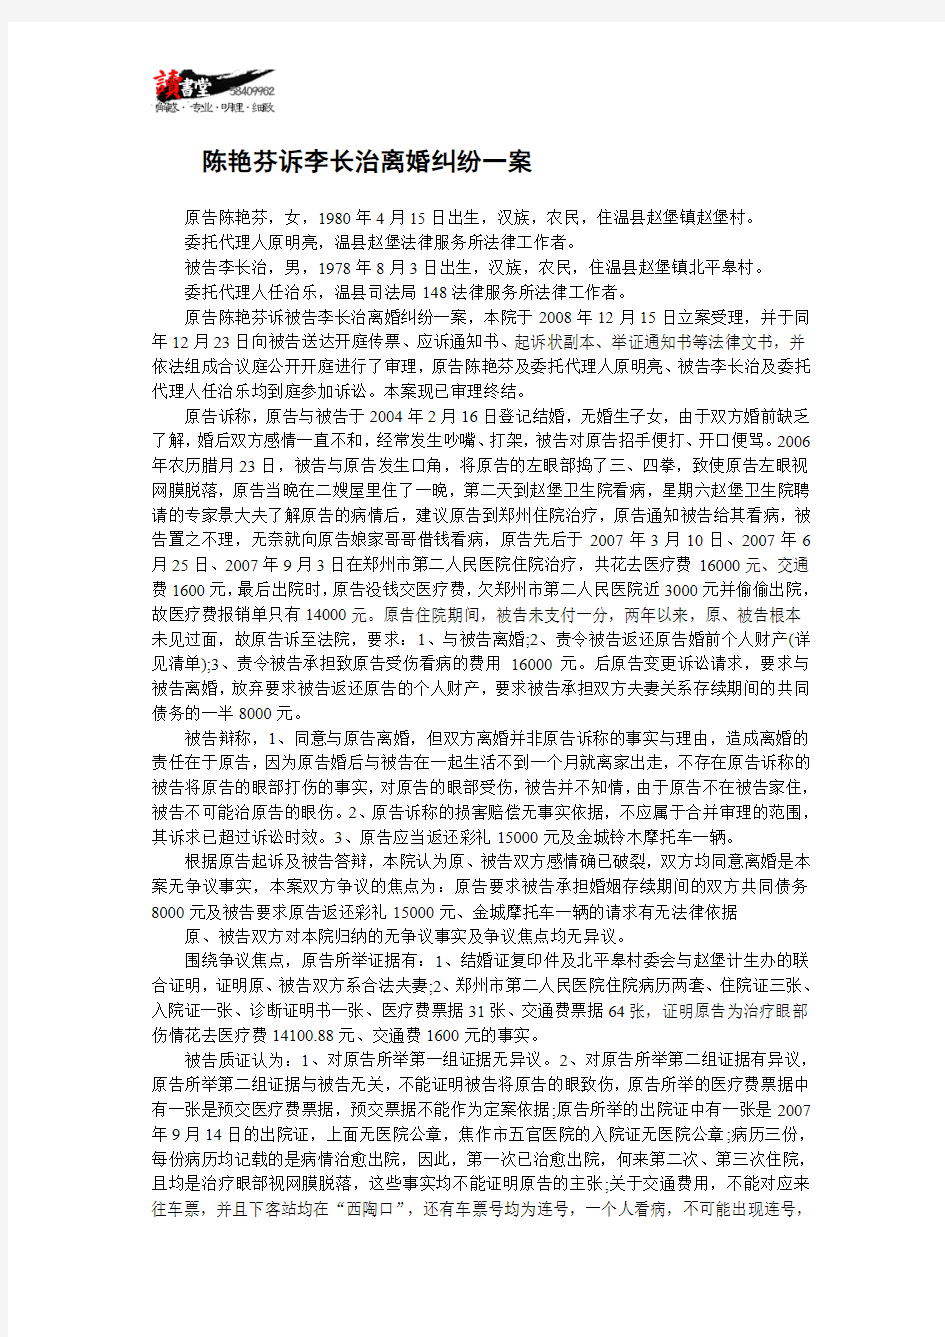 【离婚案件实录】陈艳芬诉李长治离婚纠纷一案